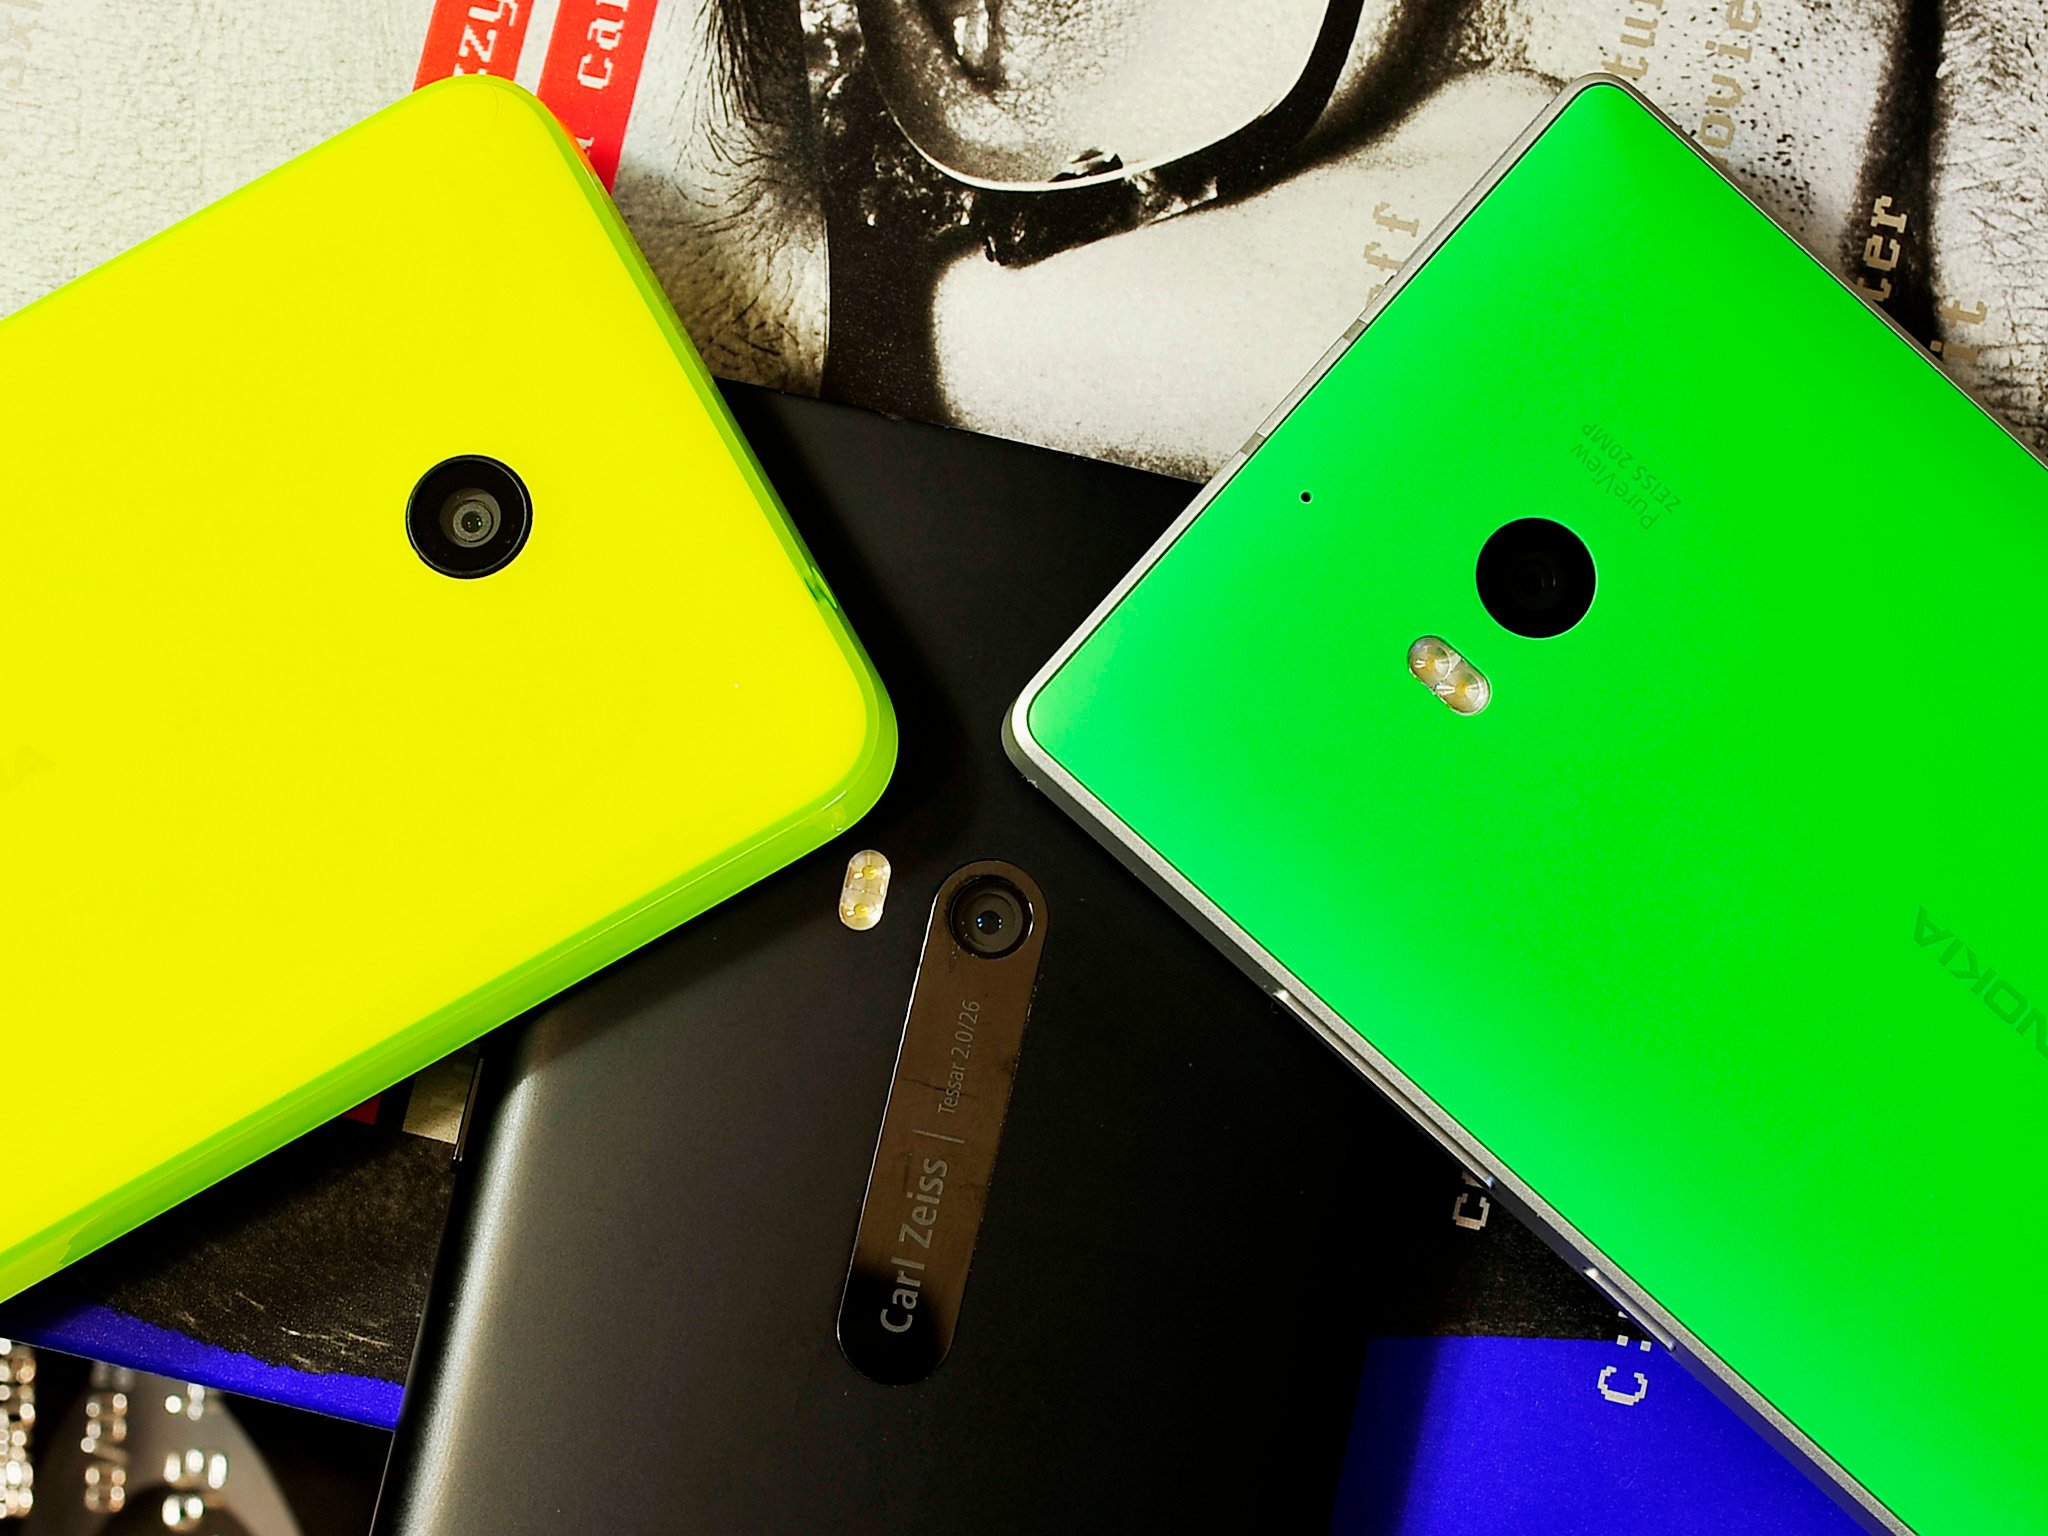 Lumia-Cameras-trio.jpg